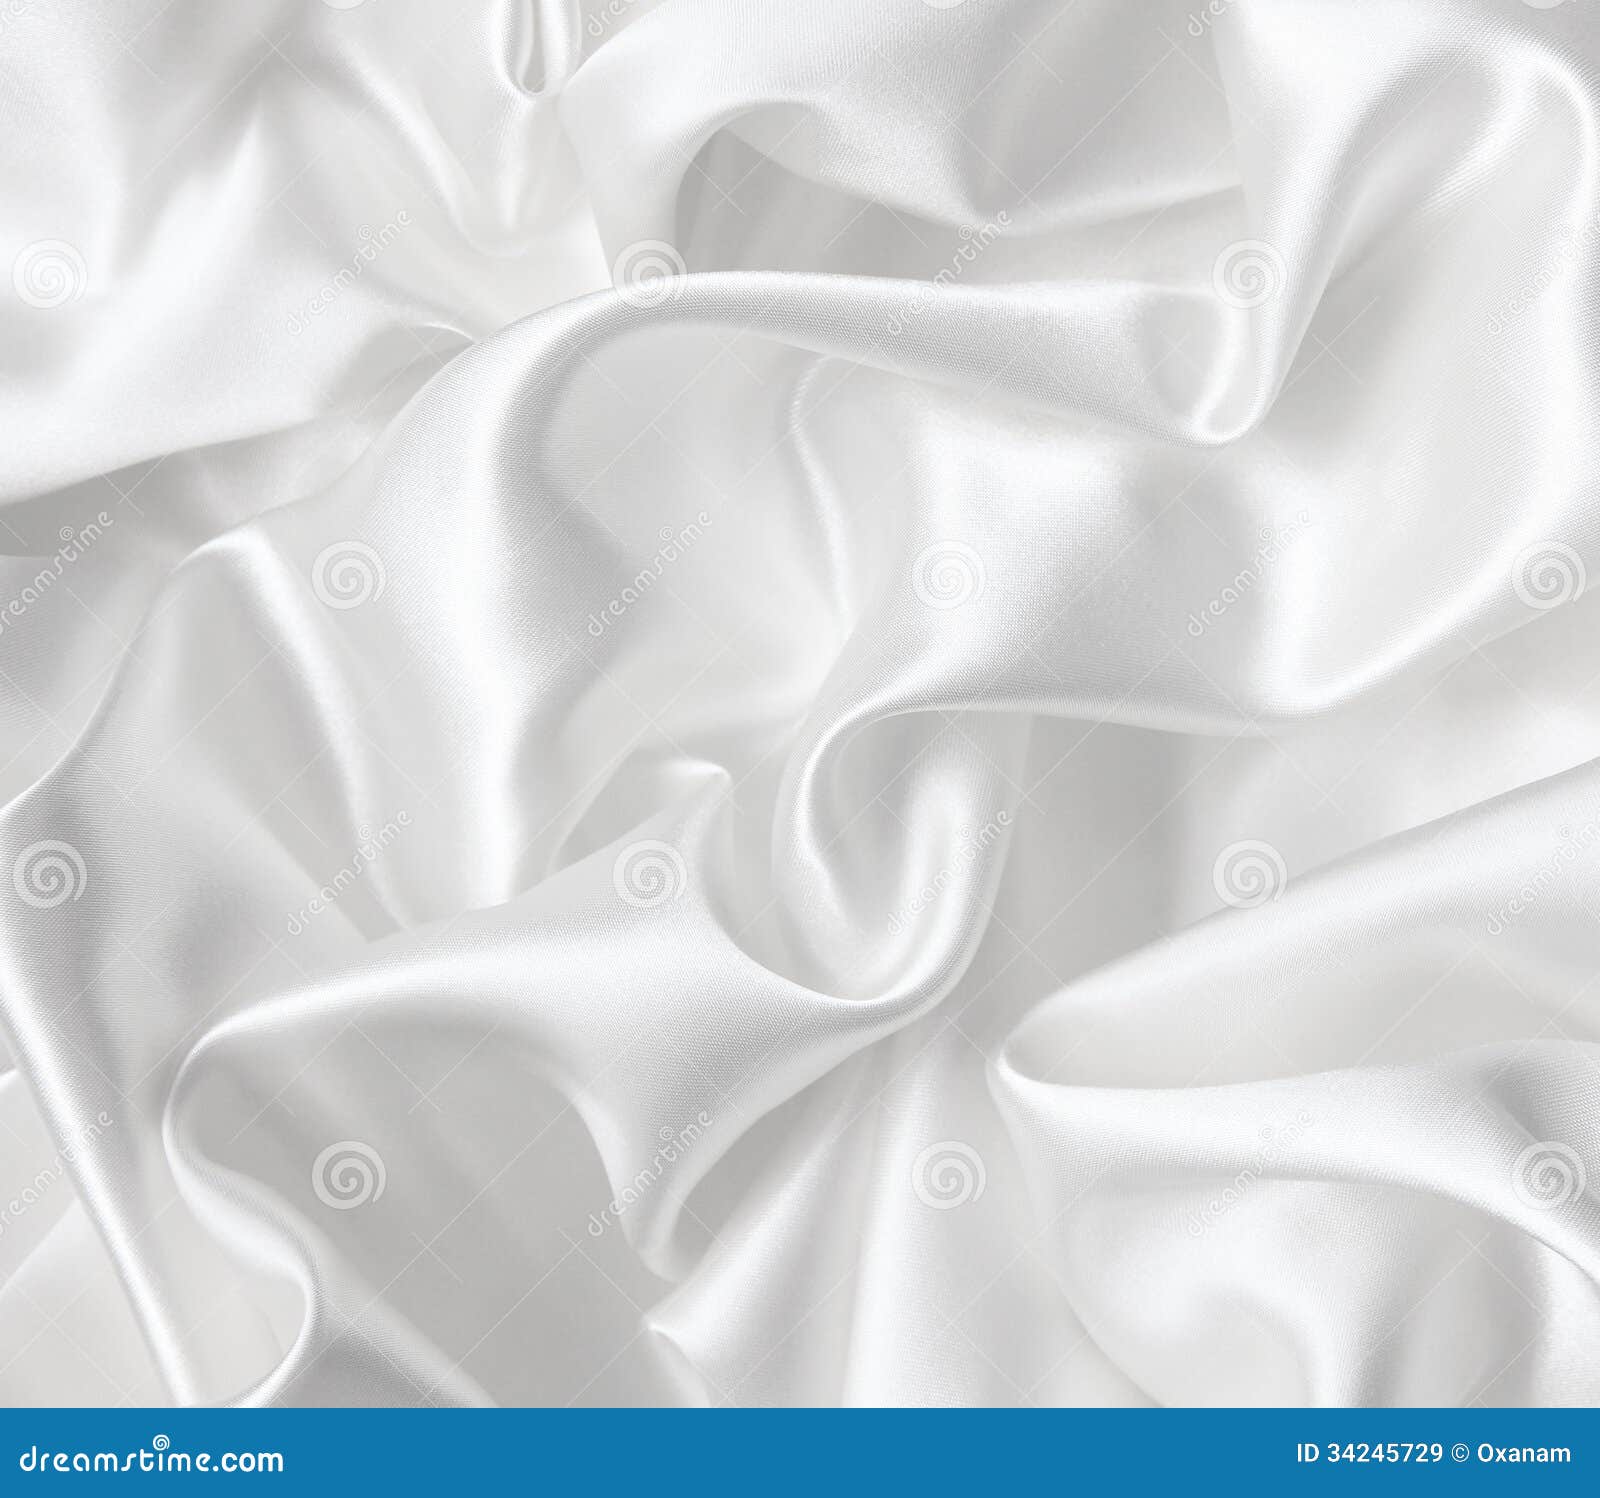 Smooth Elegant White Silk As Wedding Background Stock Image Image Of Stylish Curve